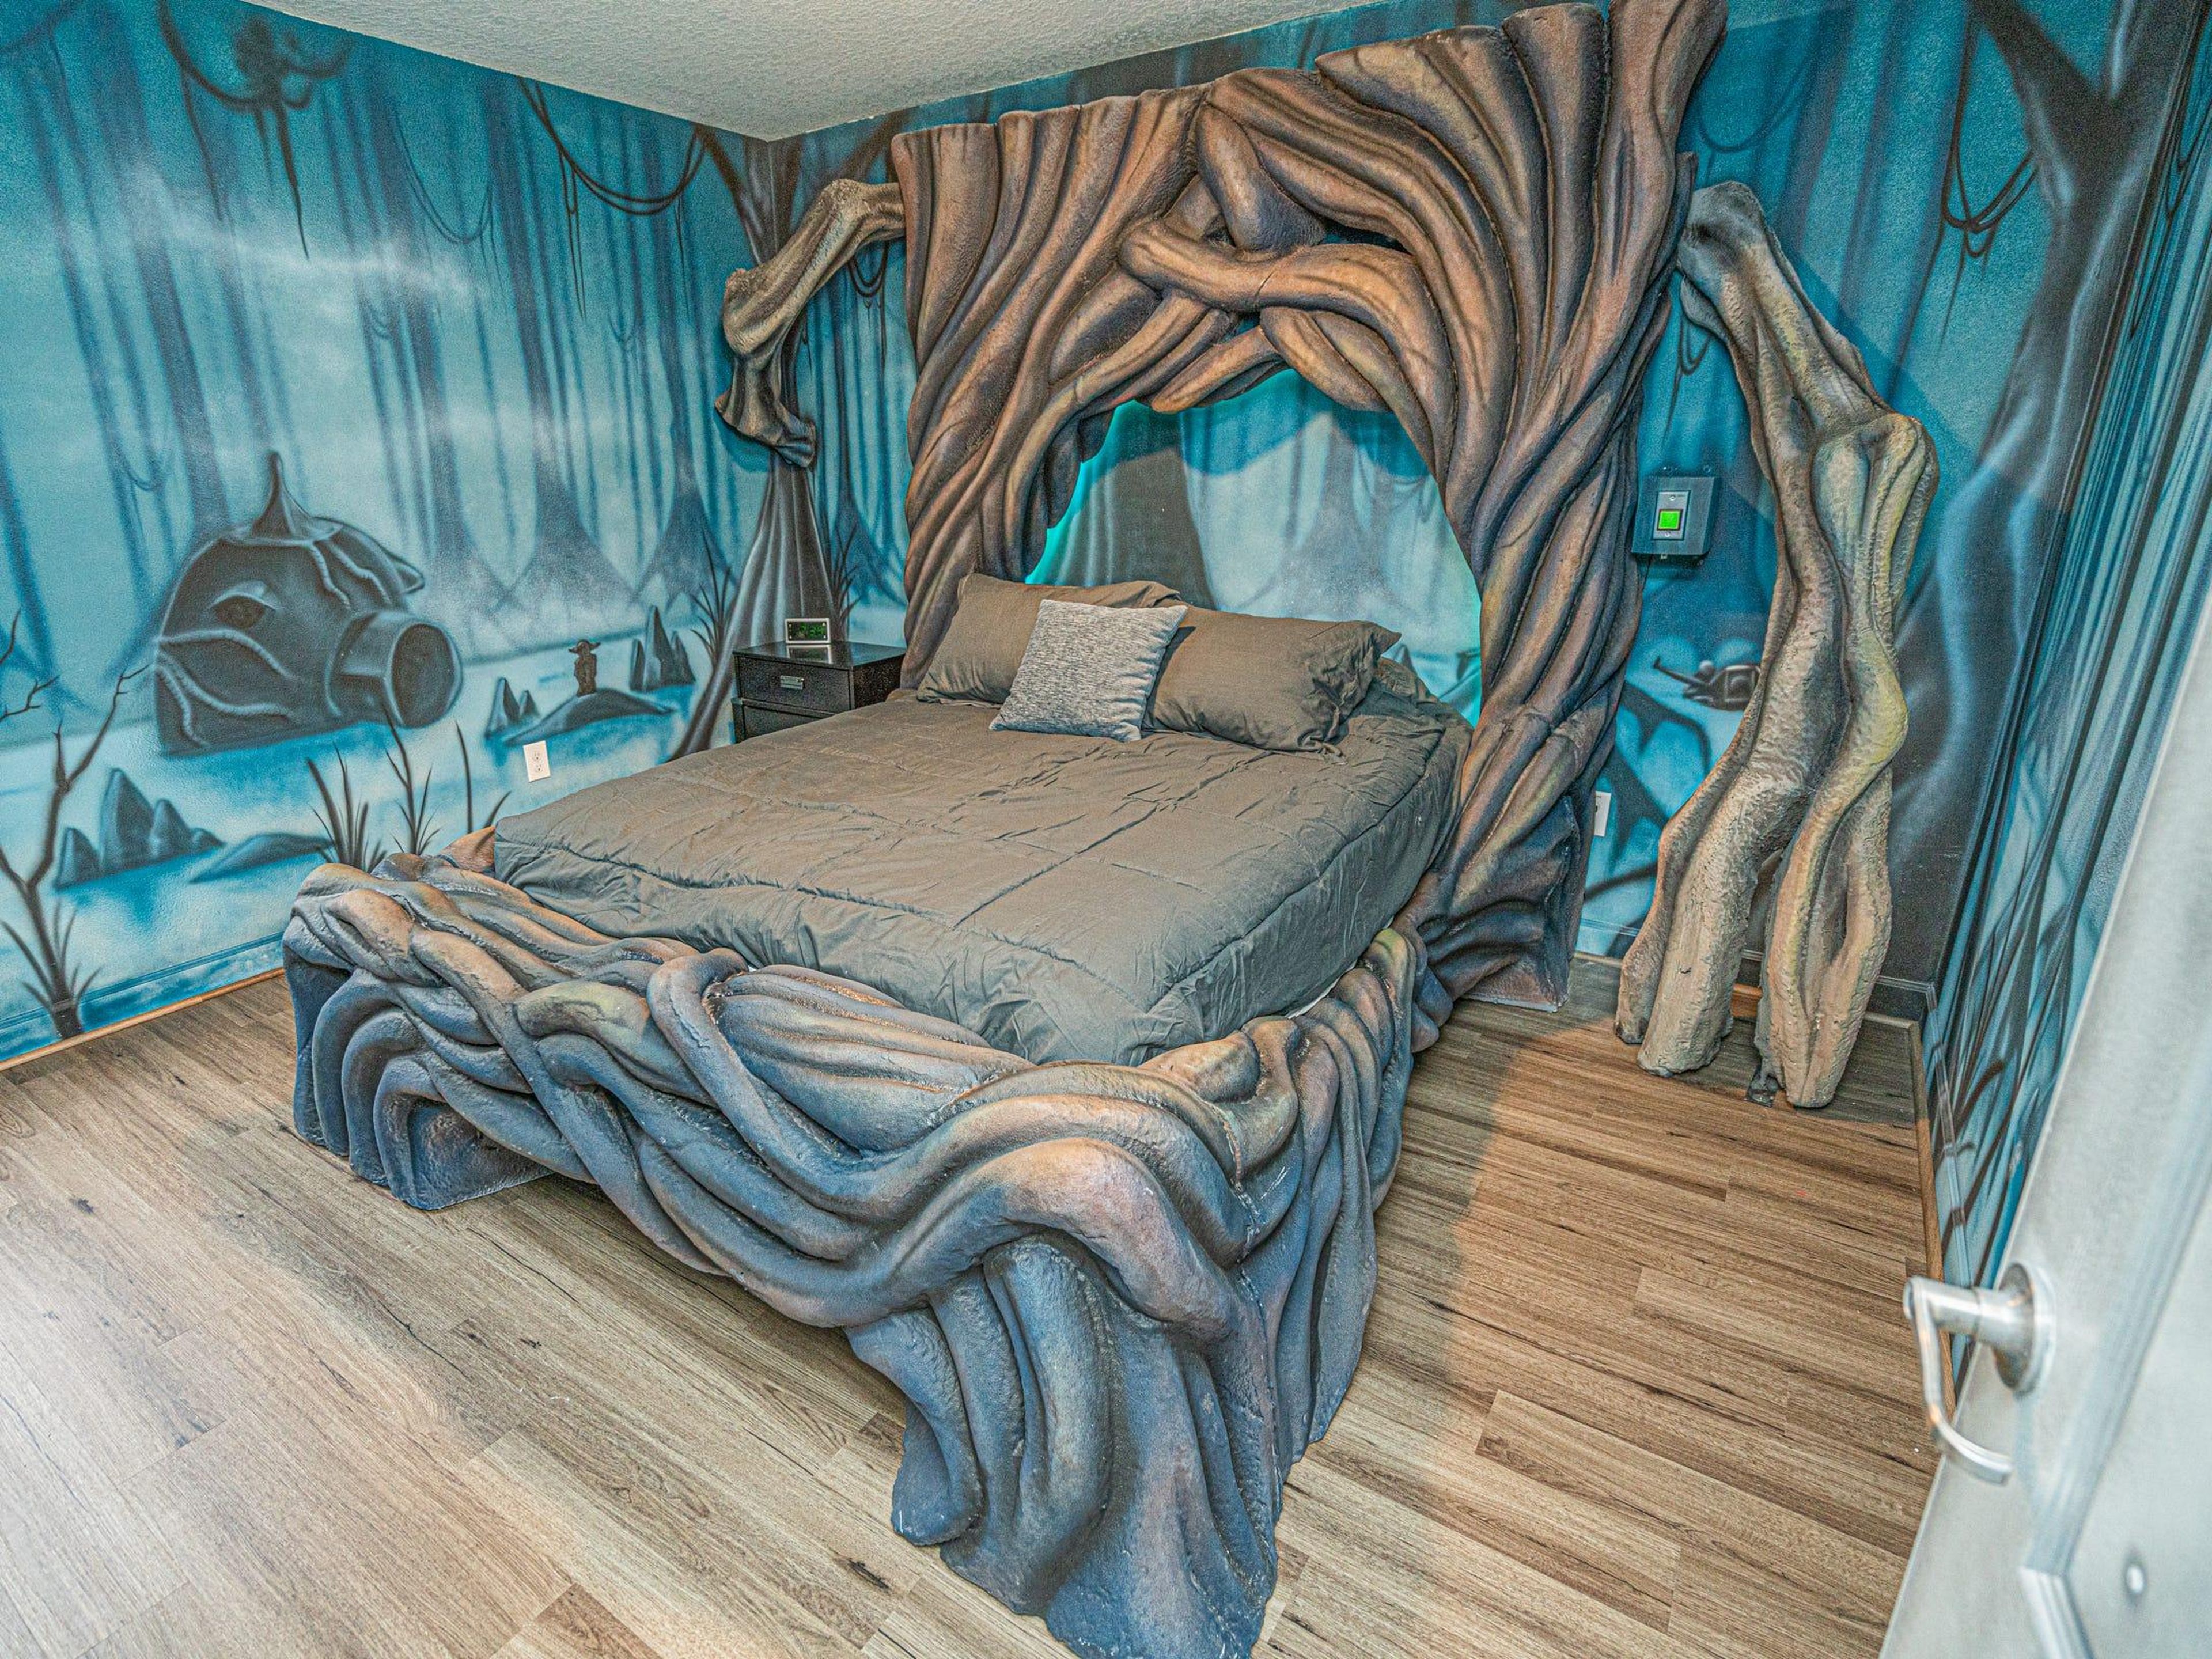 Esta otra cama está rodeada de troncos enredados.